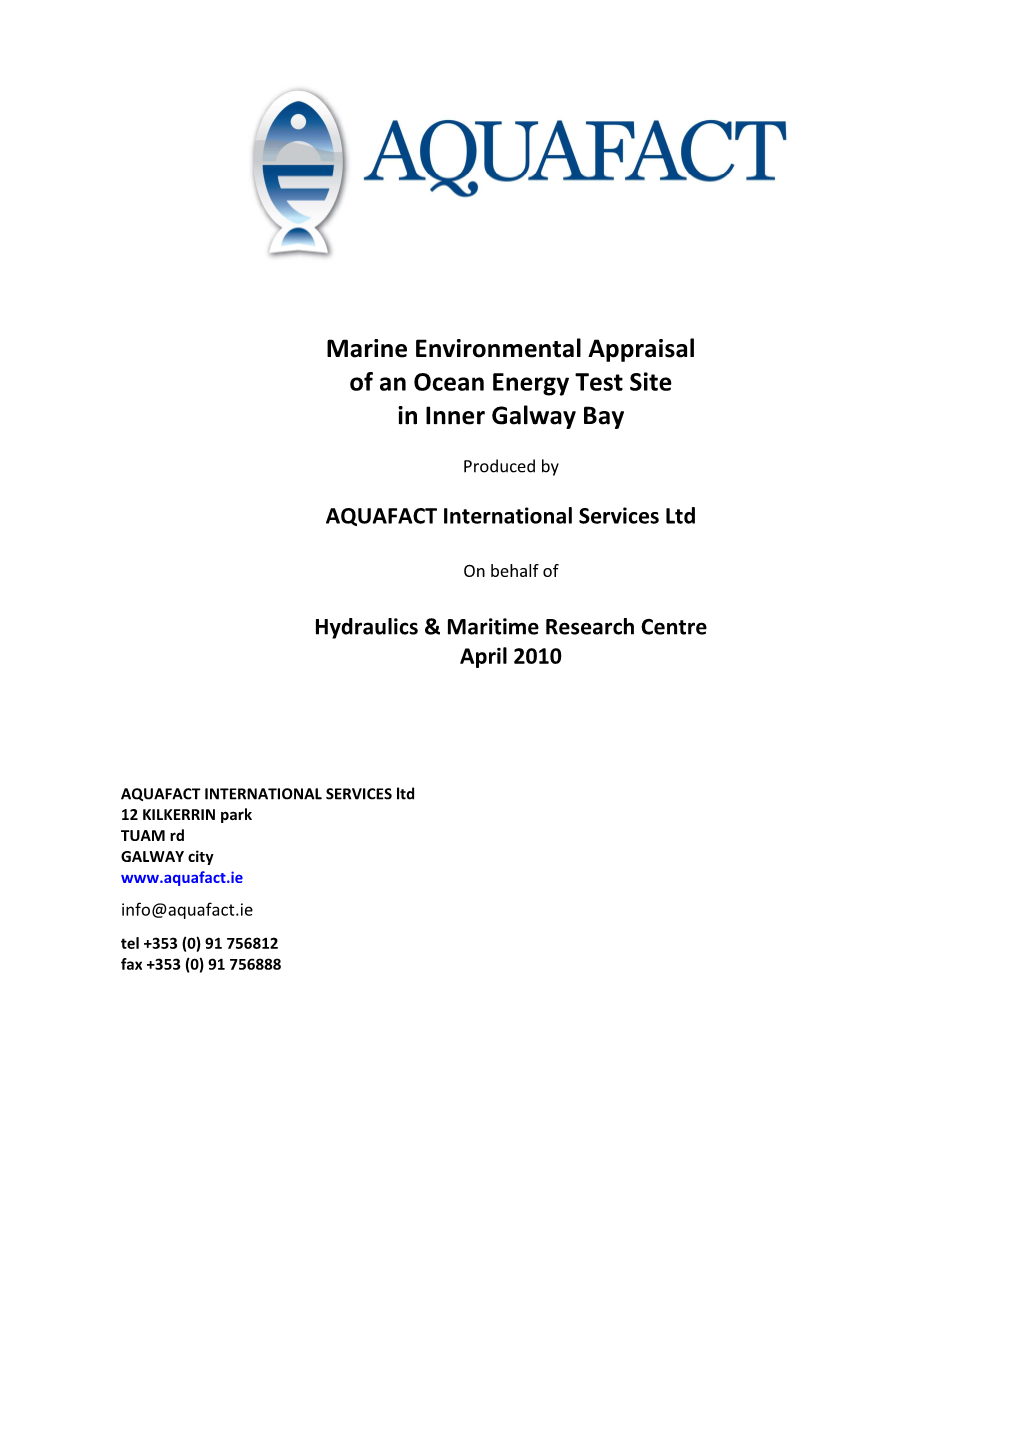 Marine Environmental Appraisal of an Ocean Energy Test Site in Inner Galway Bay